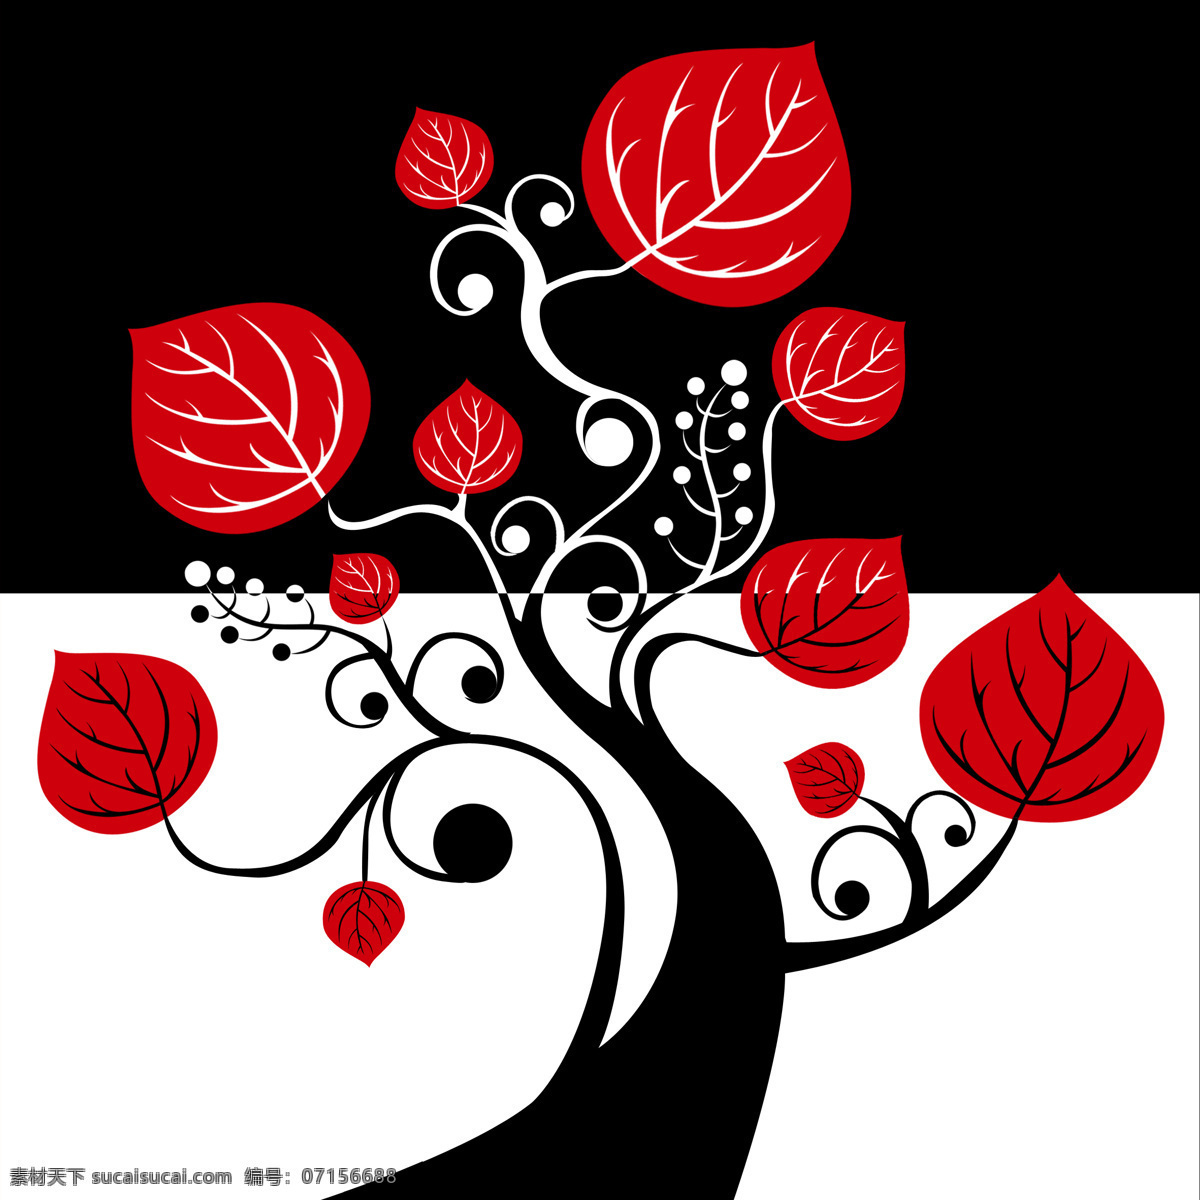 一颗树 树一颗 树干 树叶 红色 黑色 曲线 装饰画 无框画 环境设计